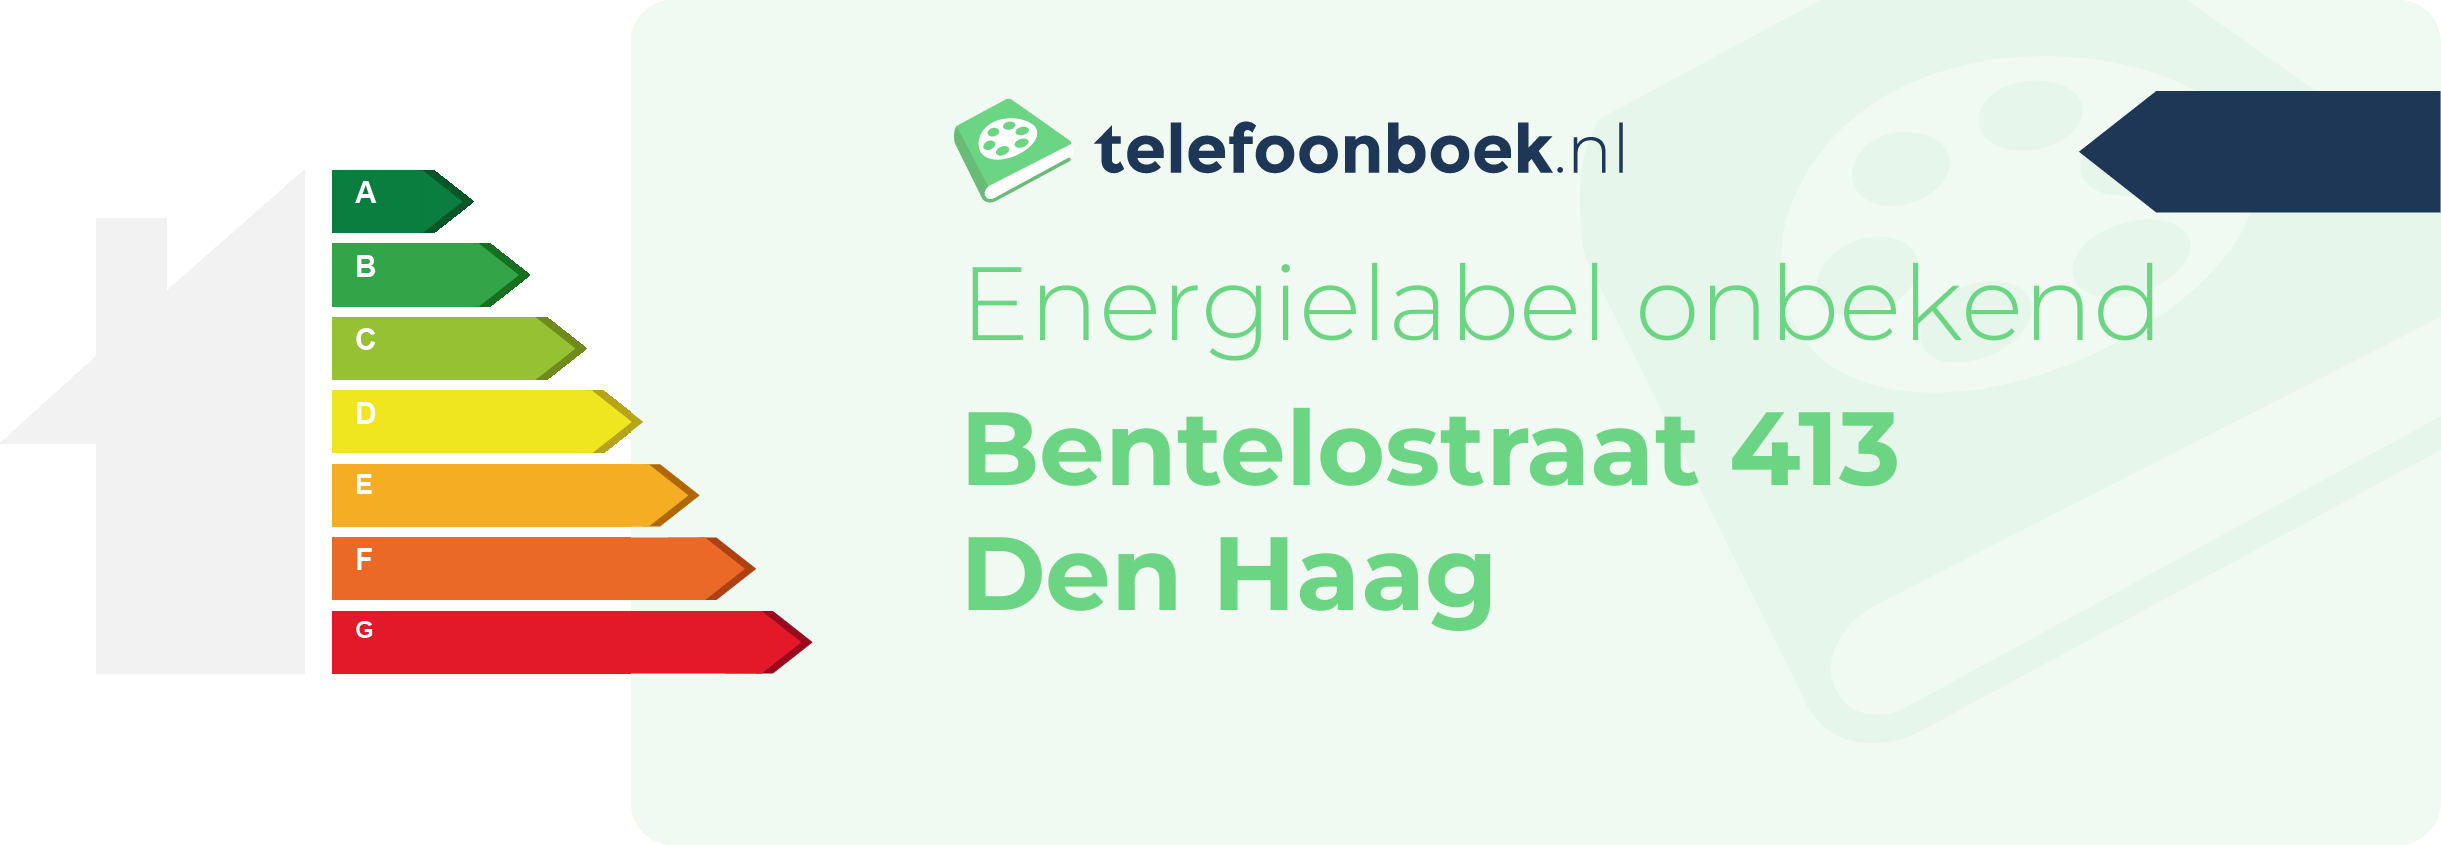 Energielabel Bentelostraat 413 Den Haag